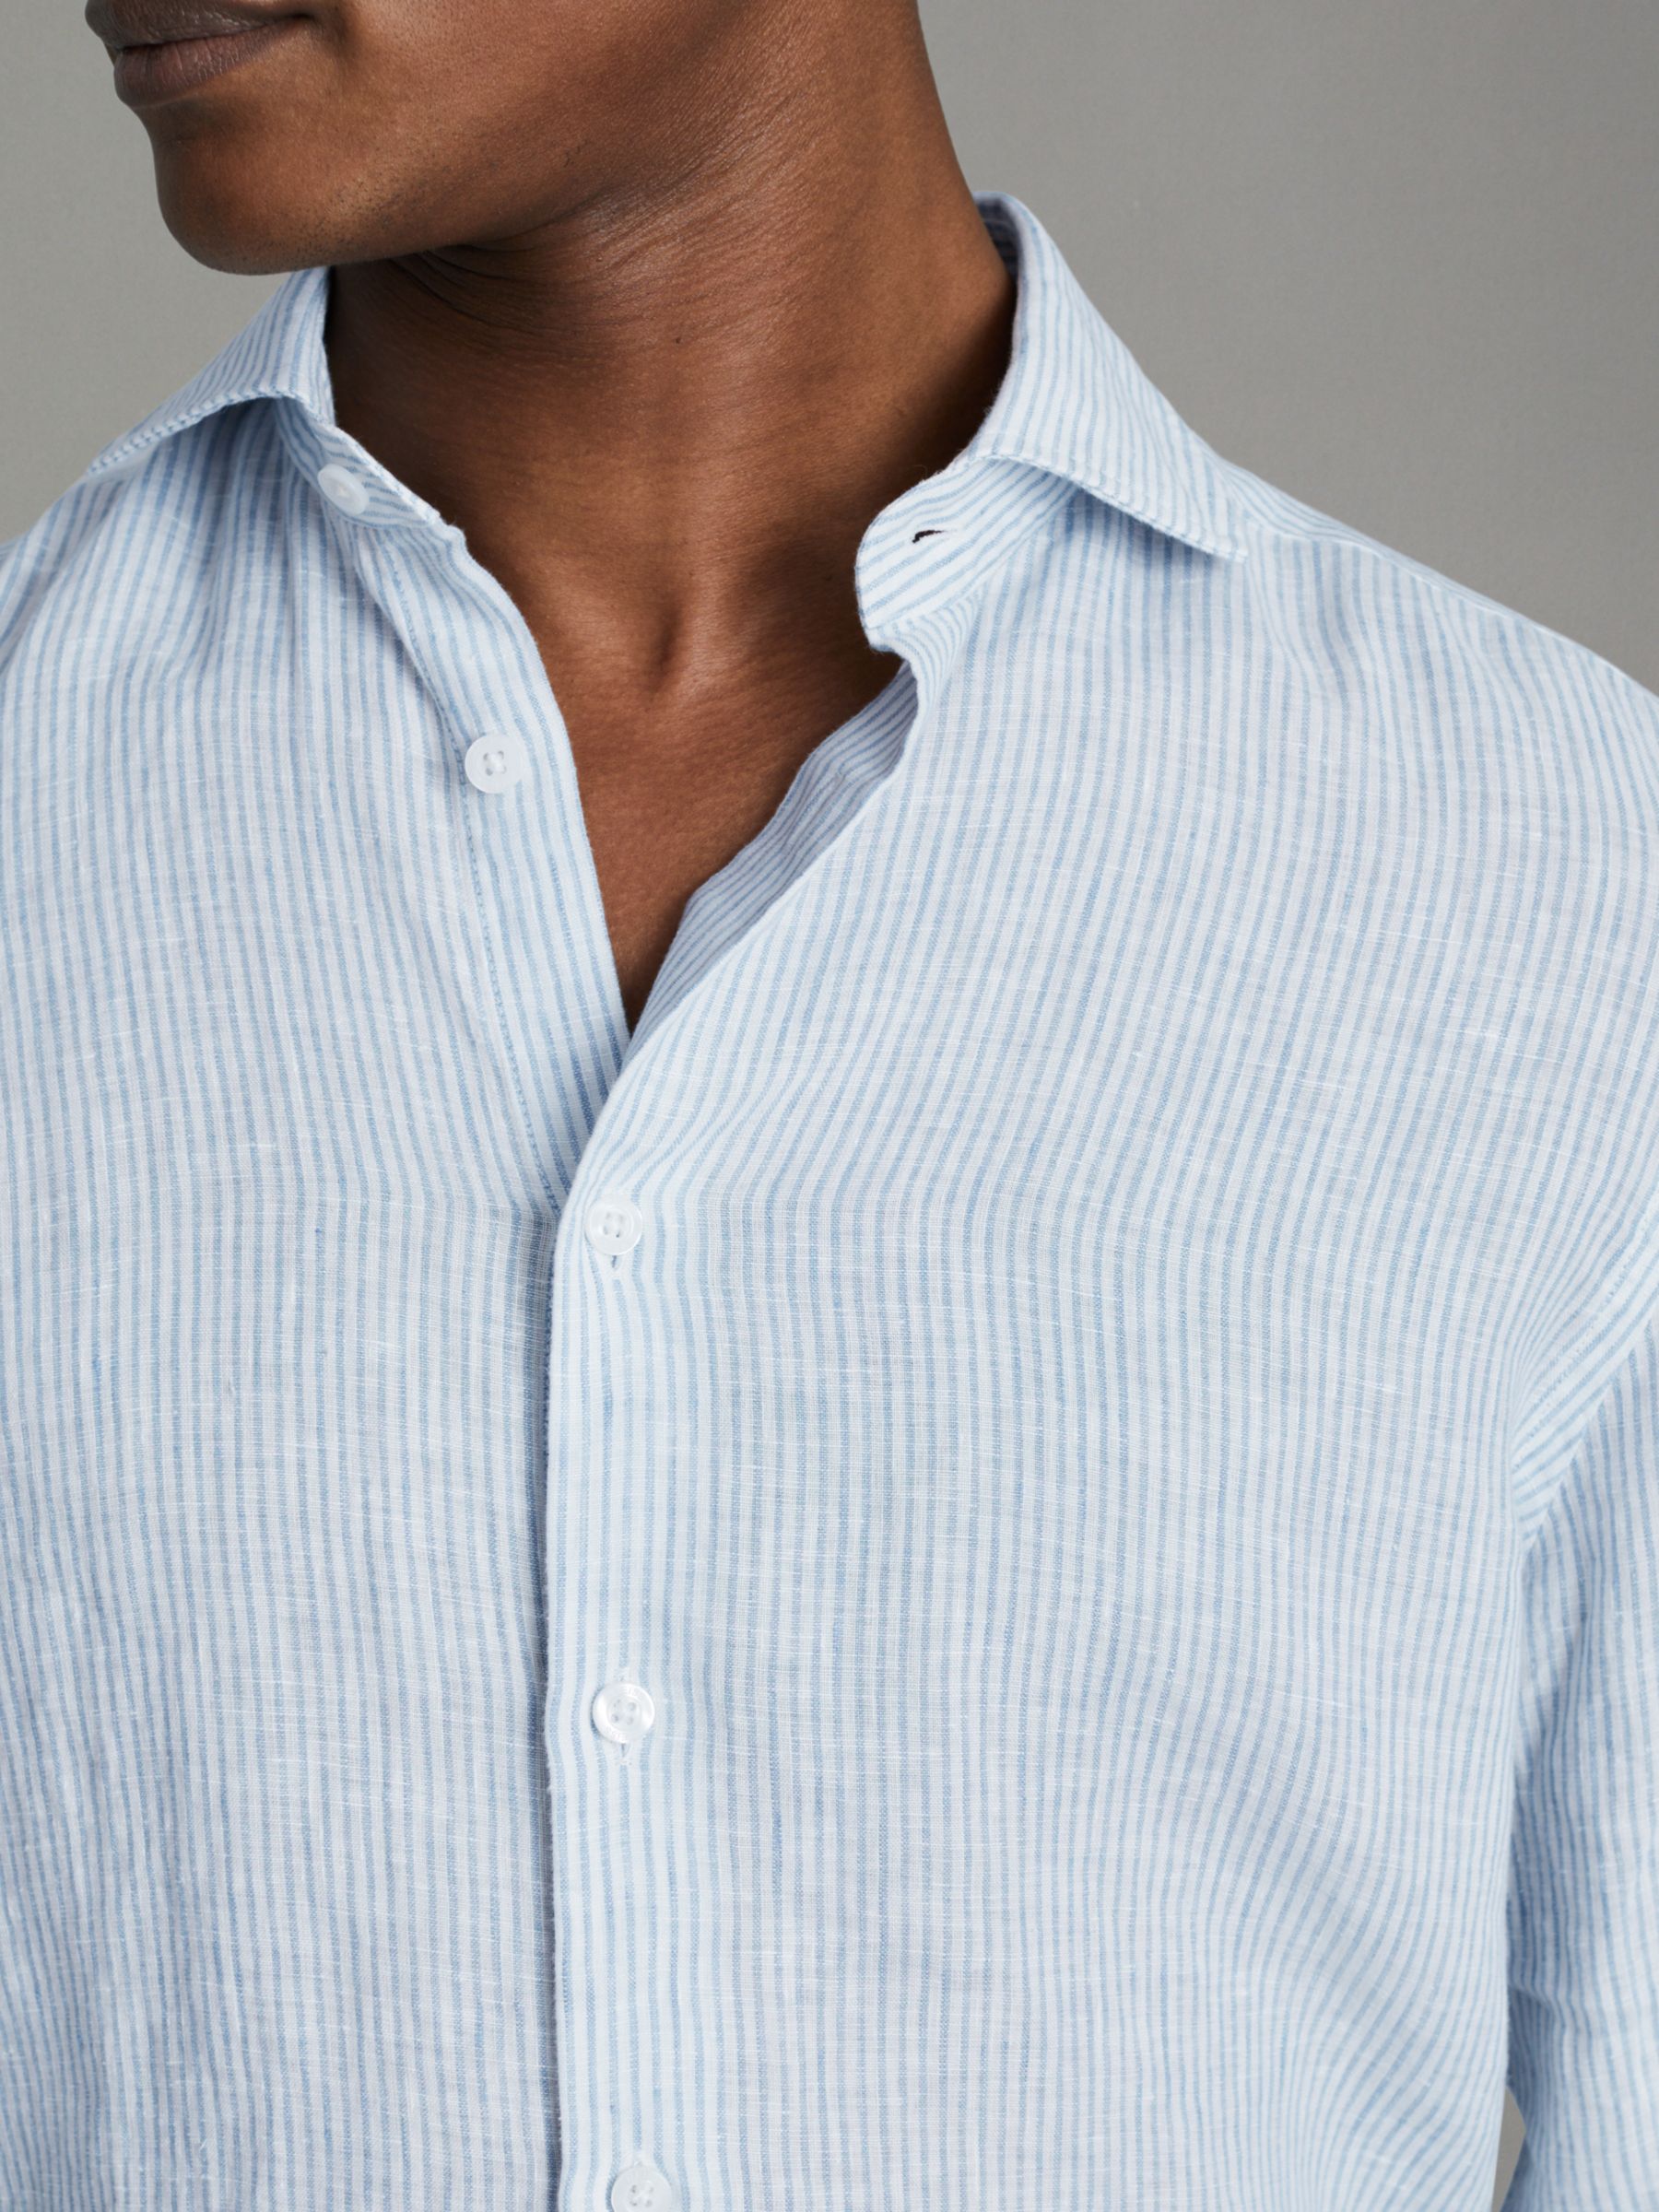 Reiss Ruban Long Sleeve Linen Shirt, Soft Blue, XS